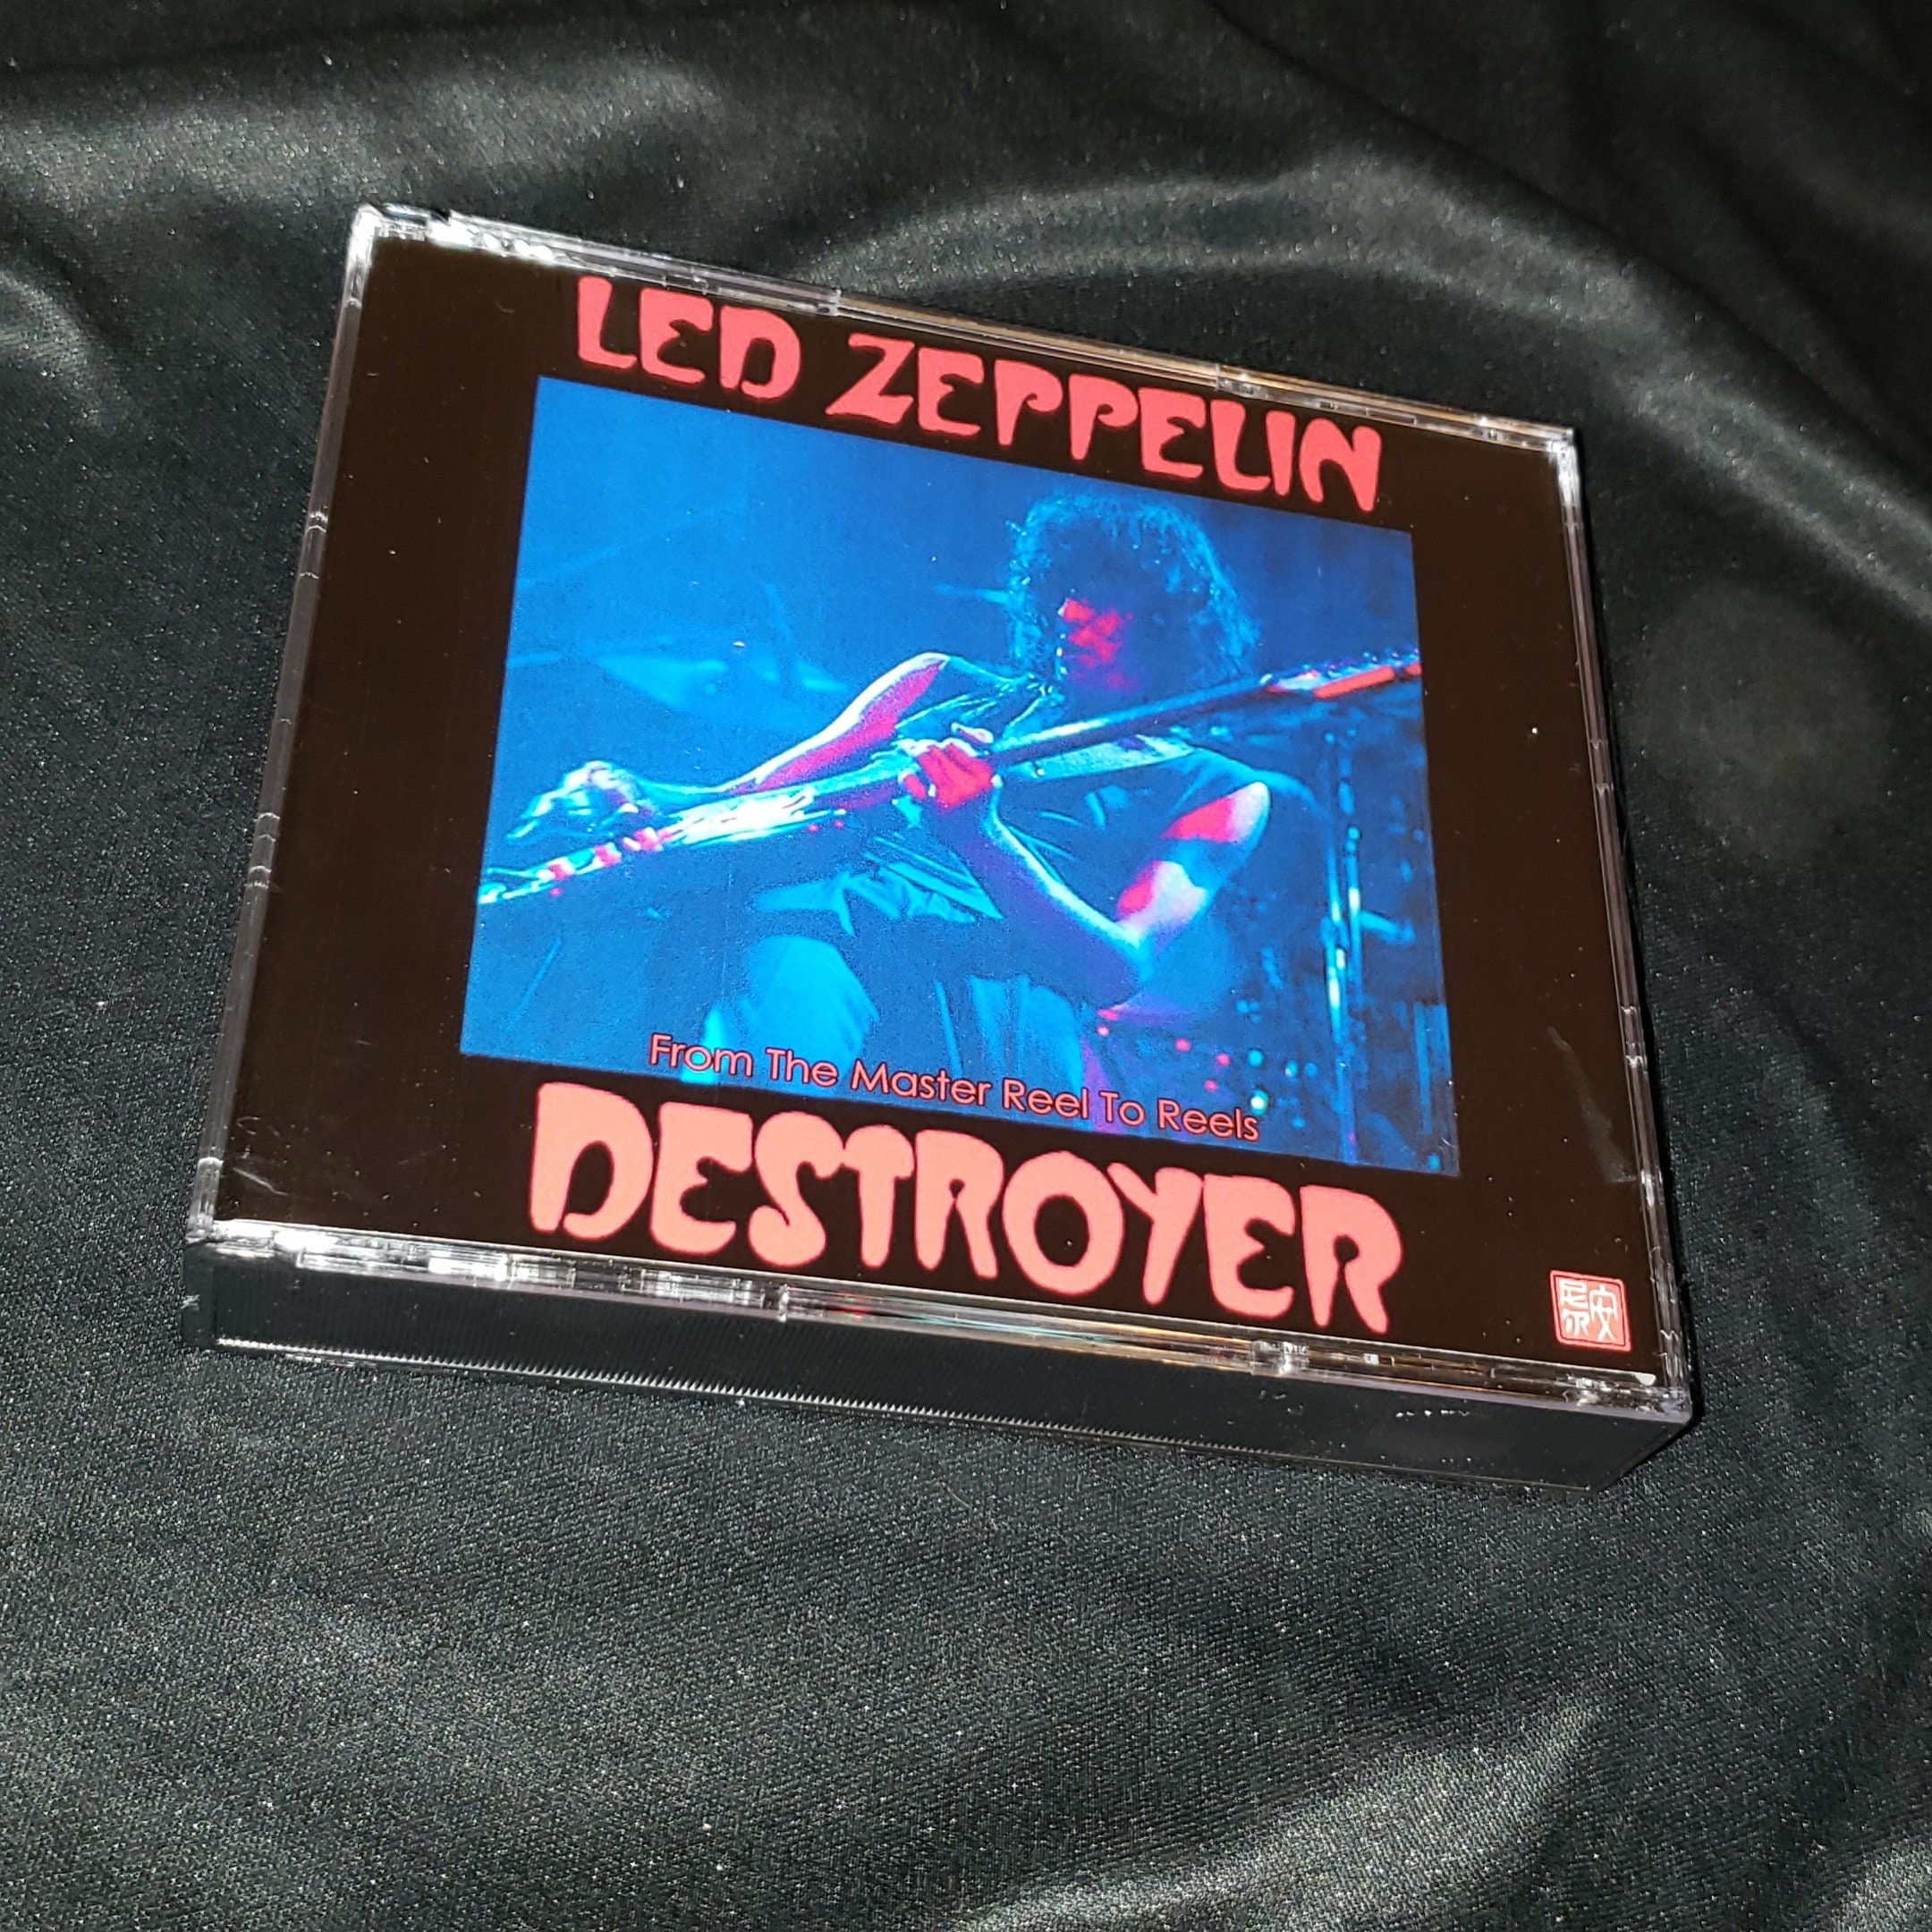 Destroyer Final Edition 3CD Led Zeppelin